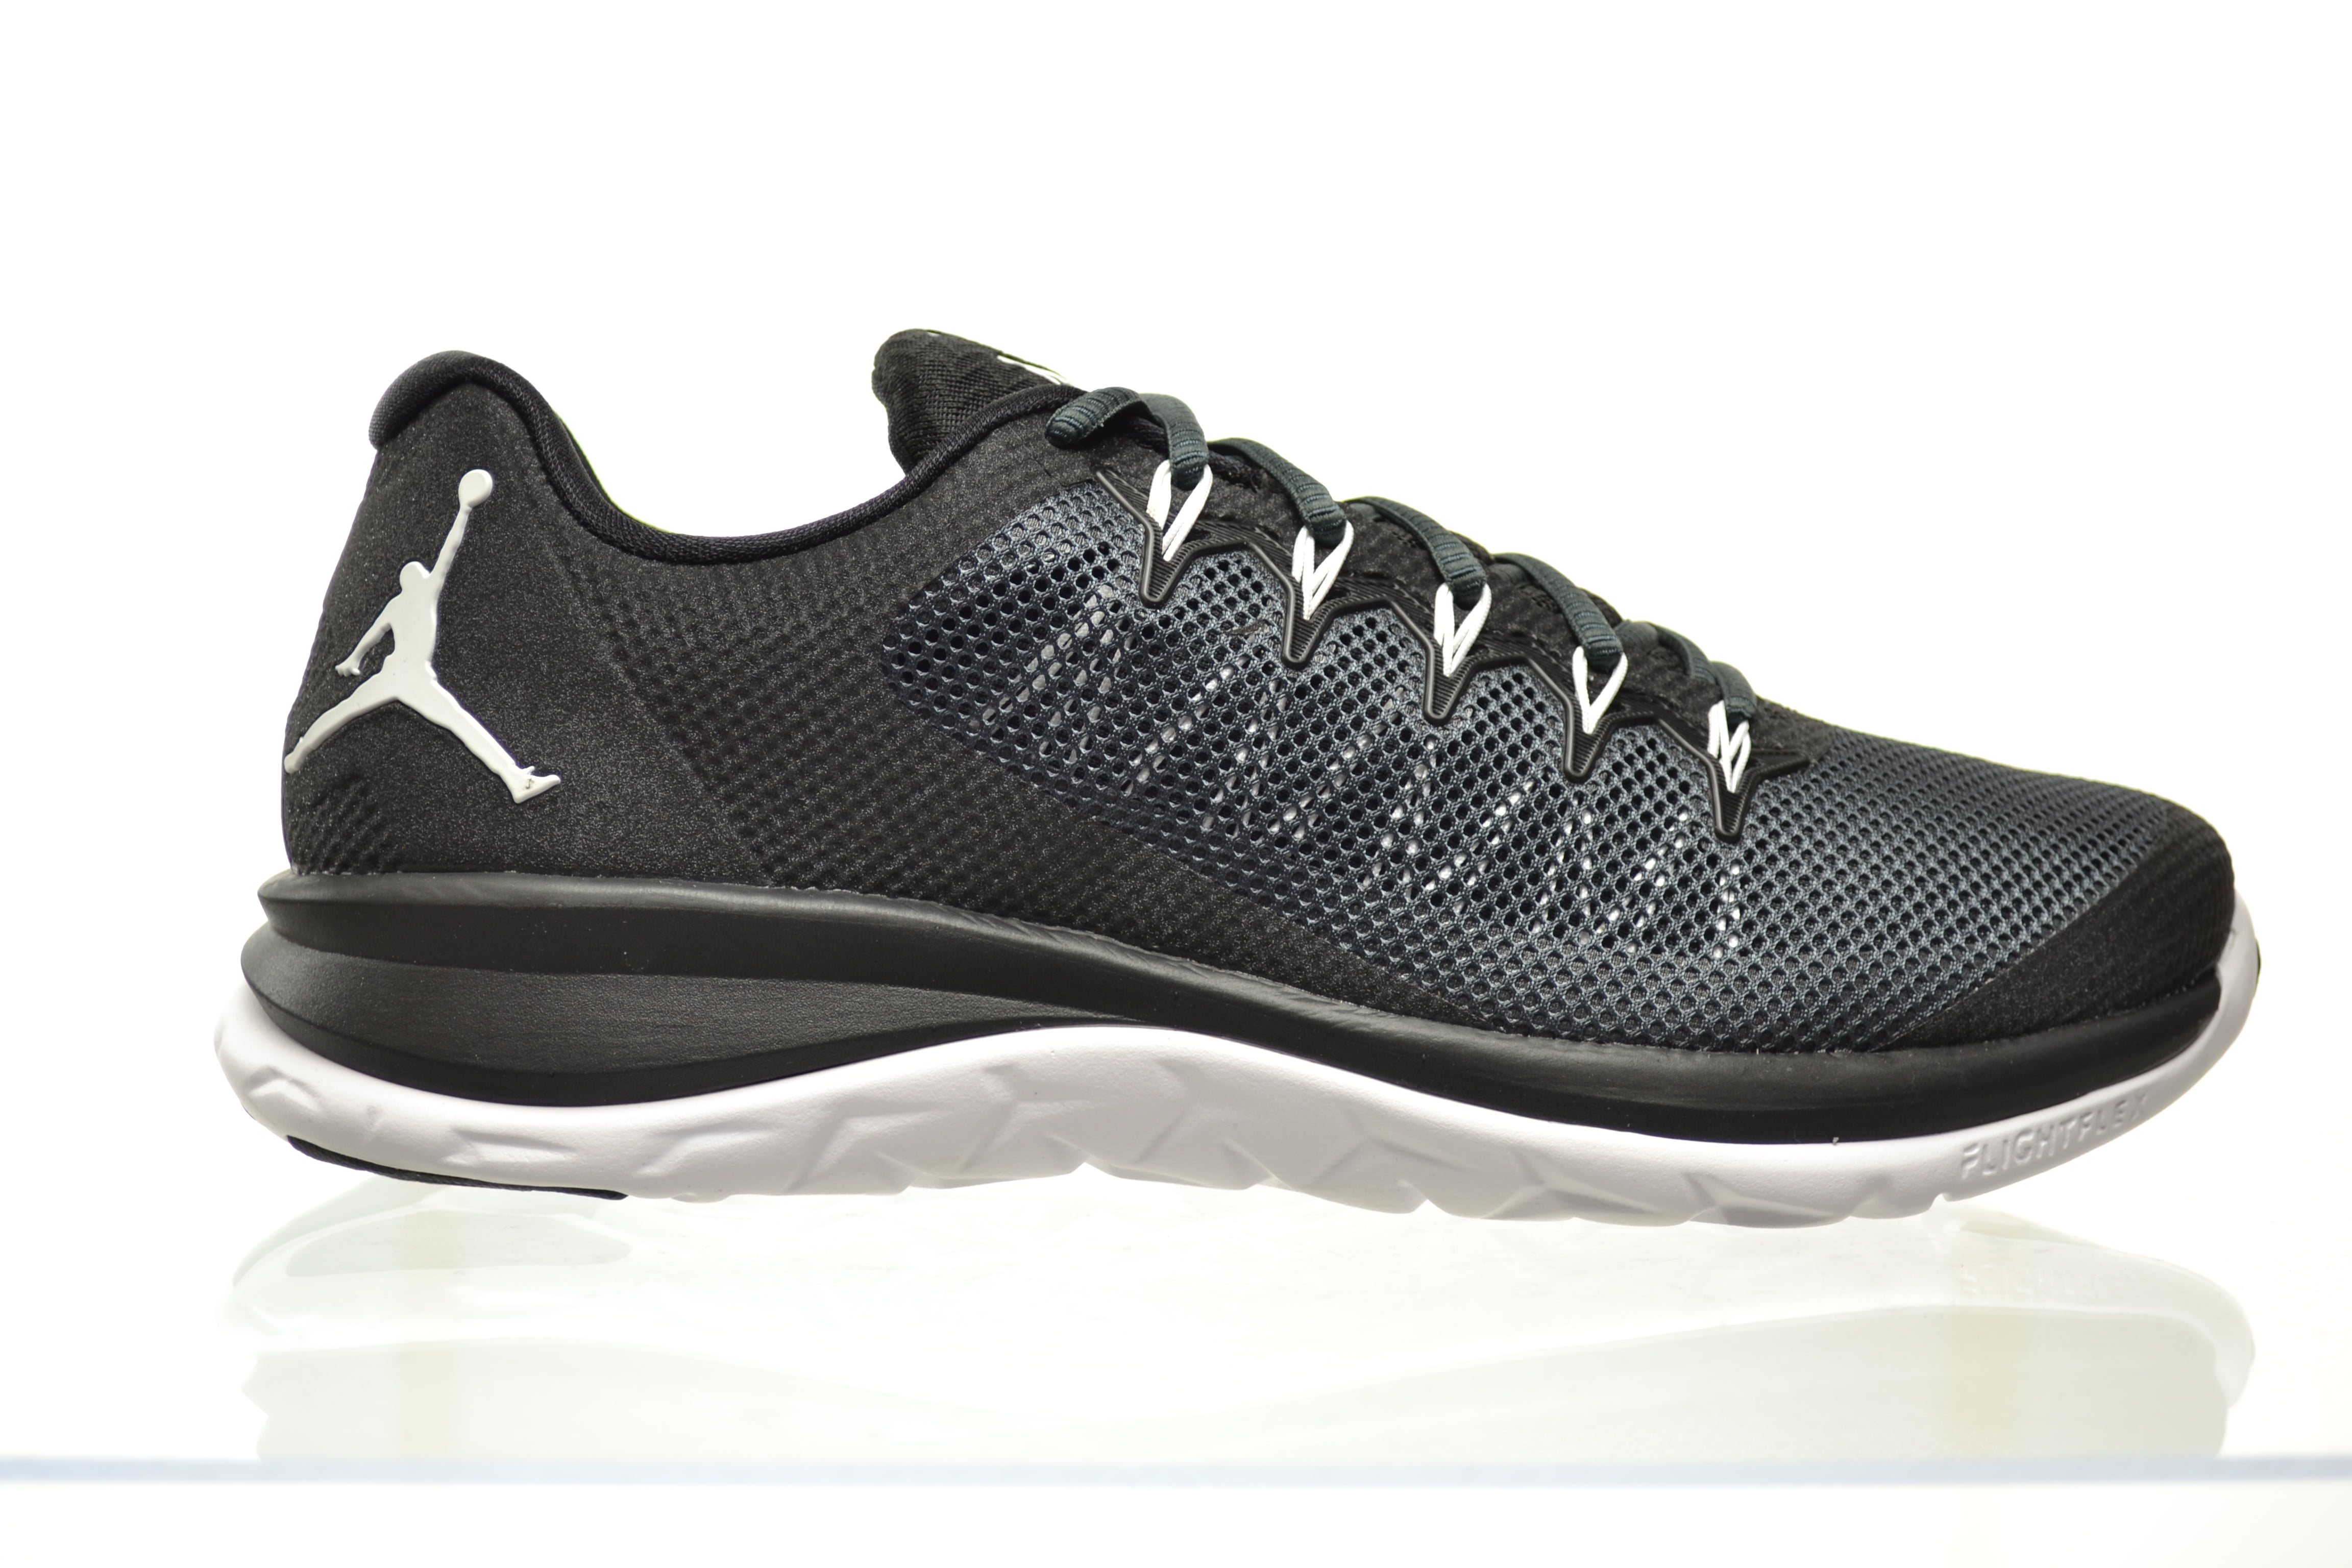 Jordan Jordan Flight Runner 2 Men's Shoes Black/White